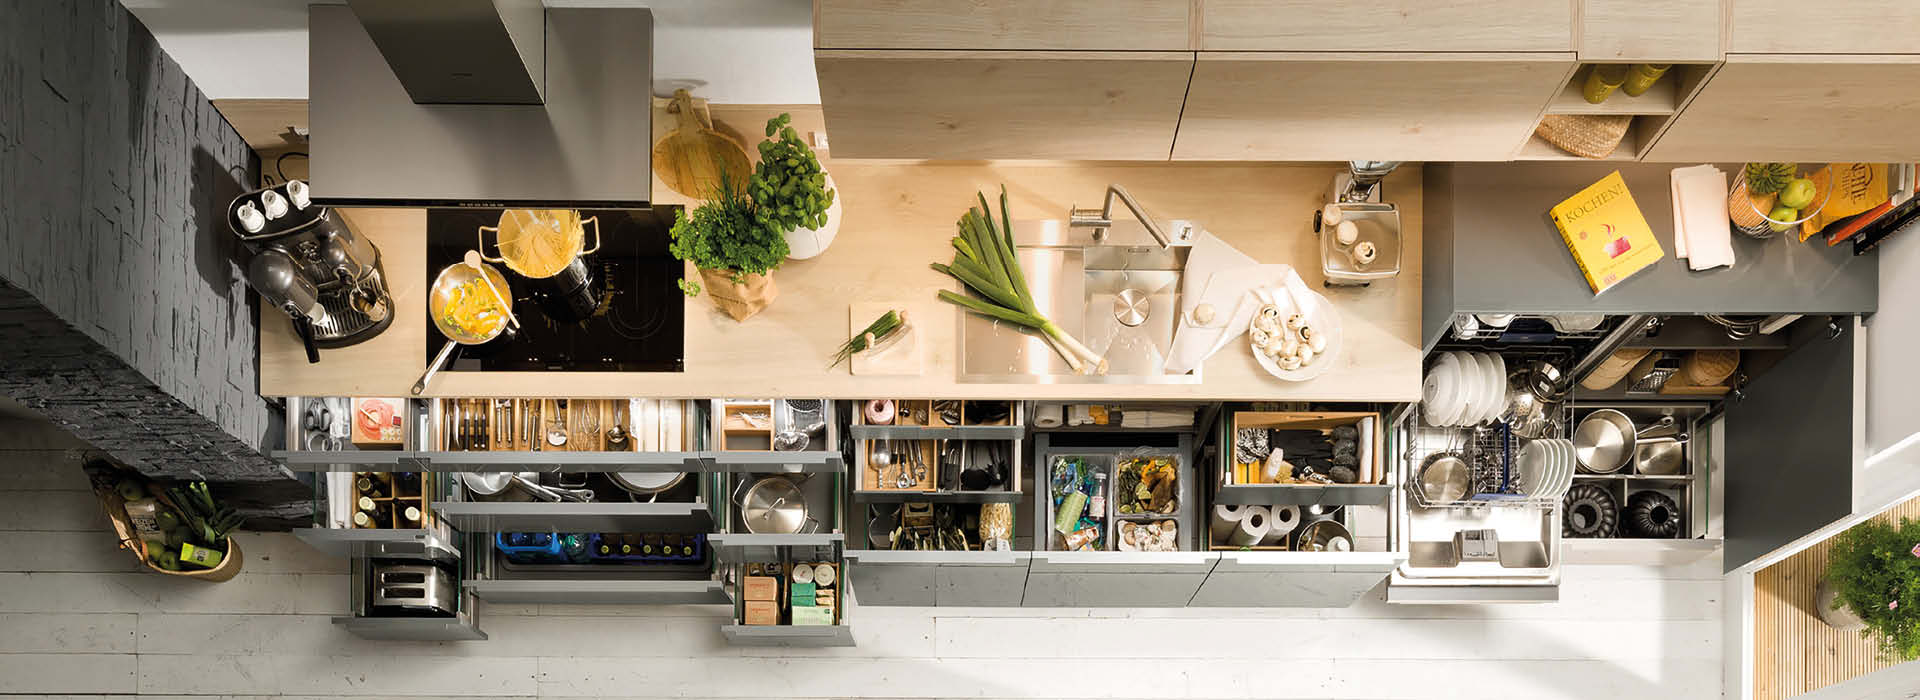 Küche mit Holz und Glasfronten